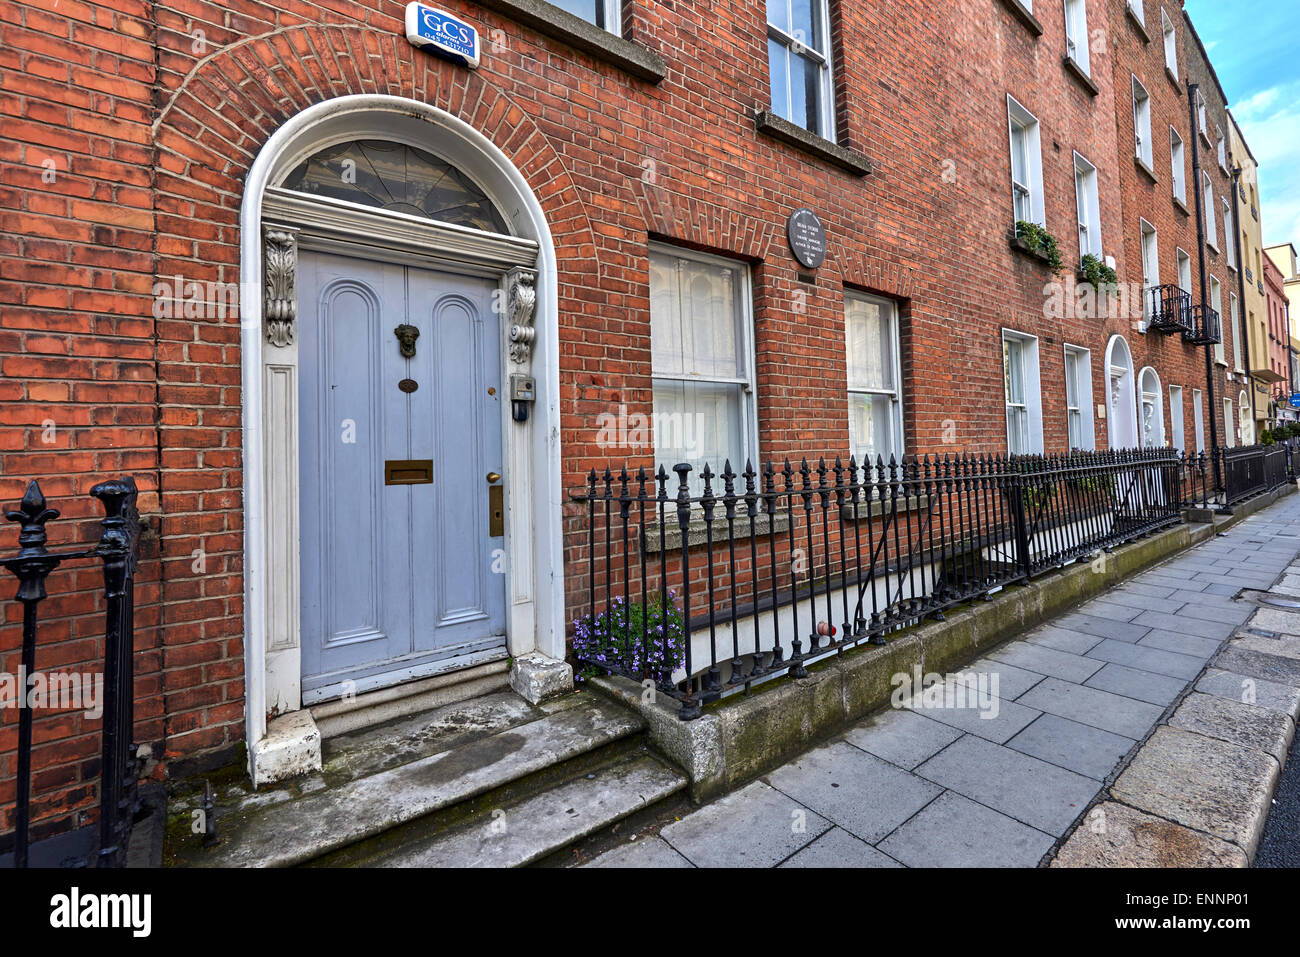 The house of Abraham 'Bram' Stoker Dublin Ireland Stock Photo